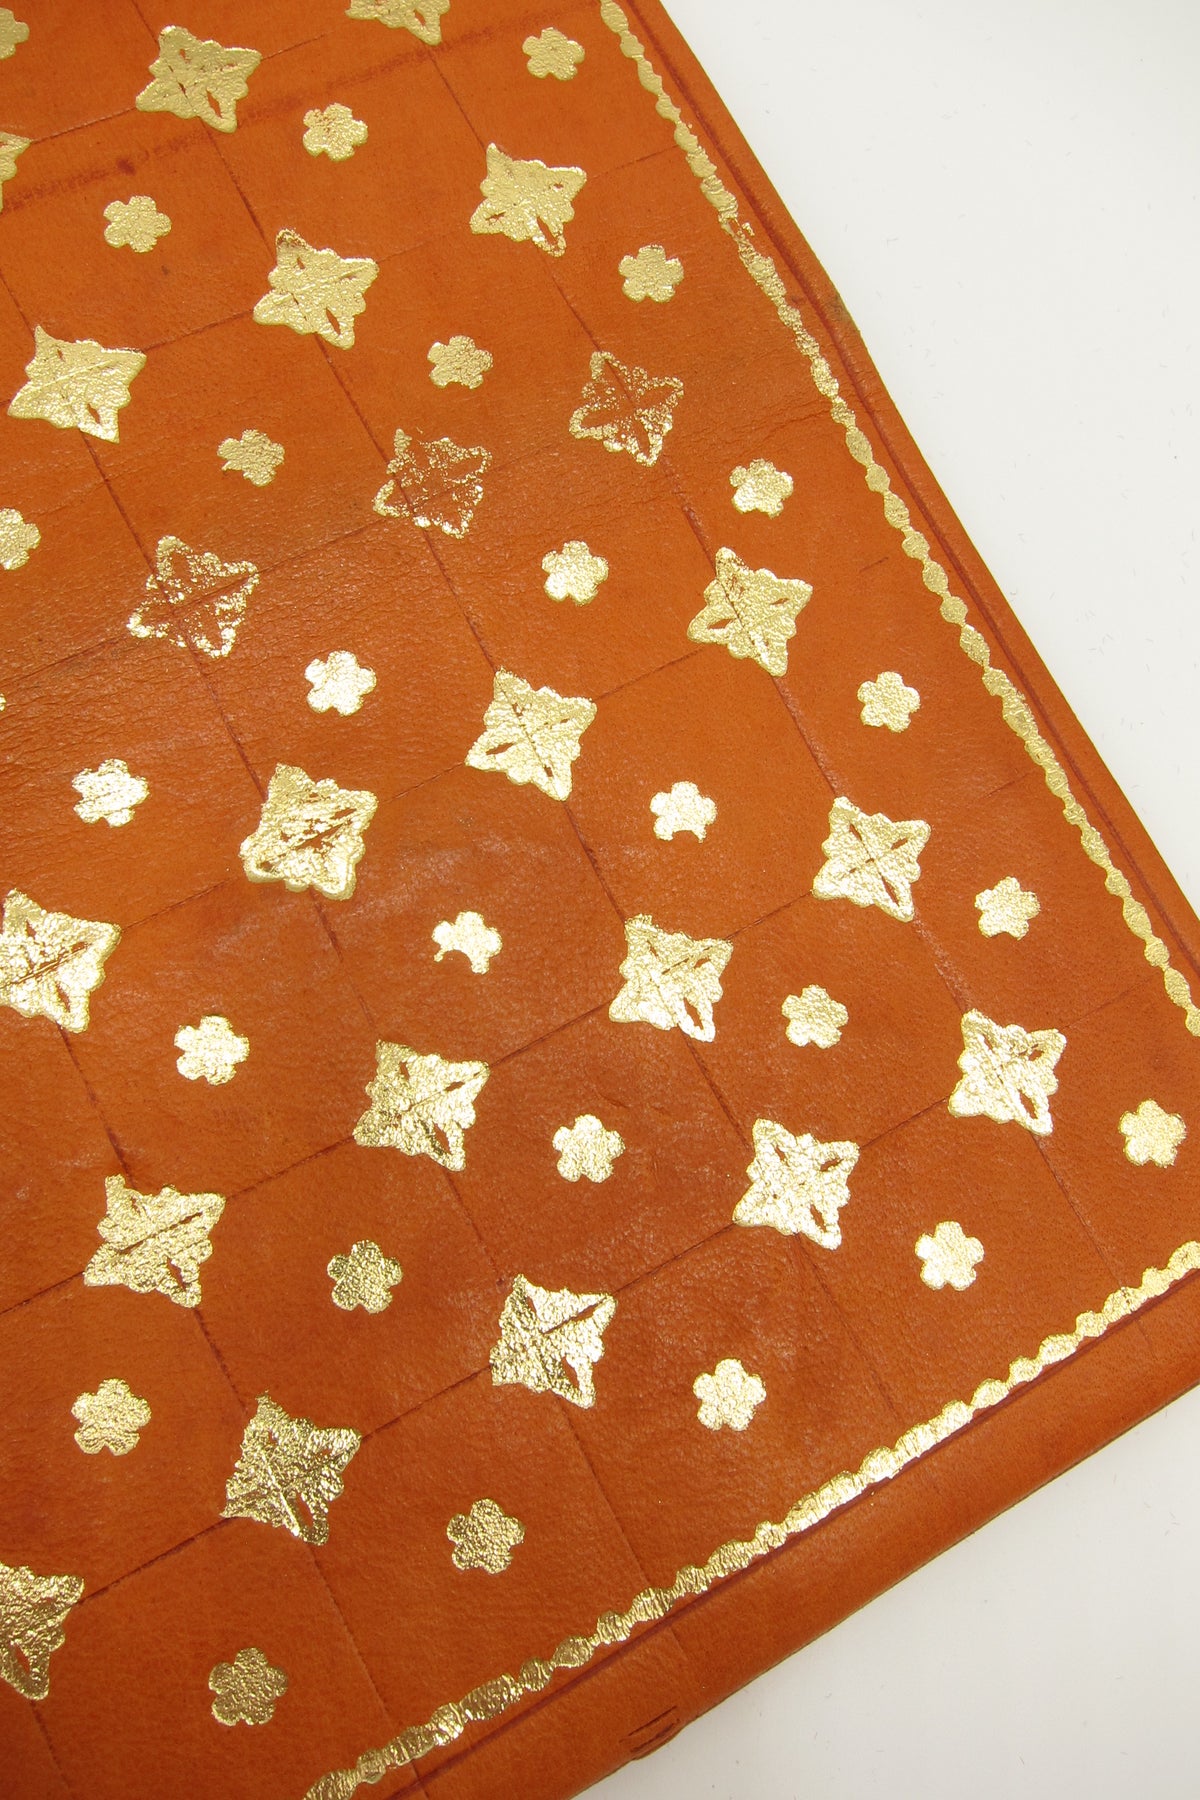 Copy of Vintage Florentine 22K Gold Accented Leather Wallet - Orange